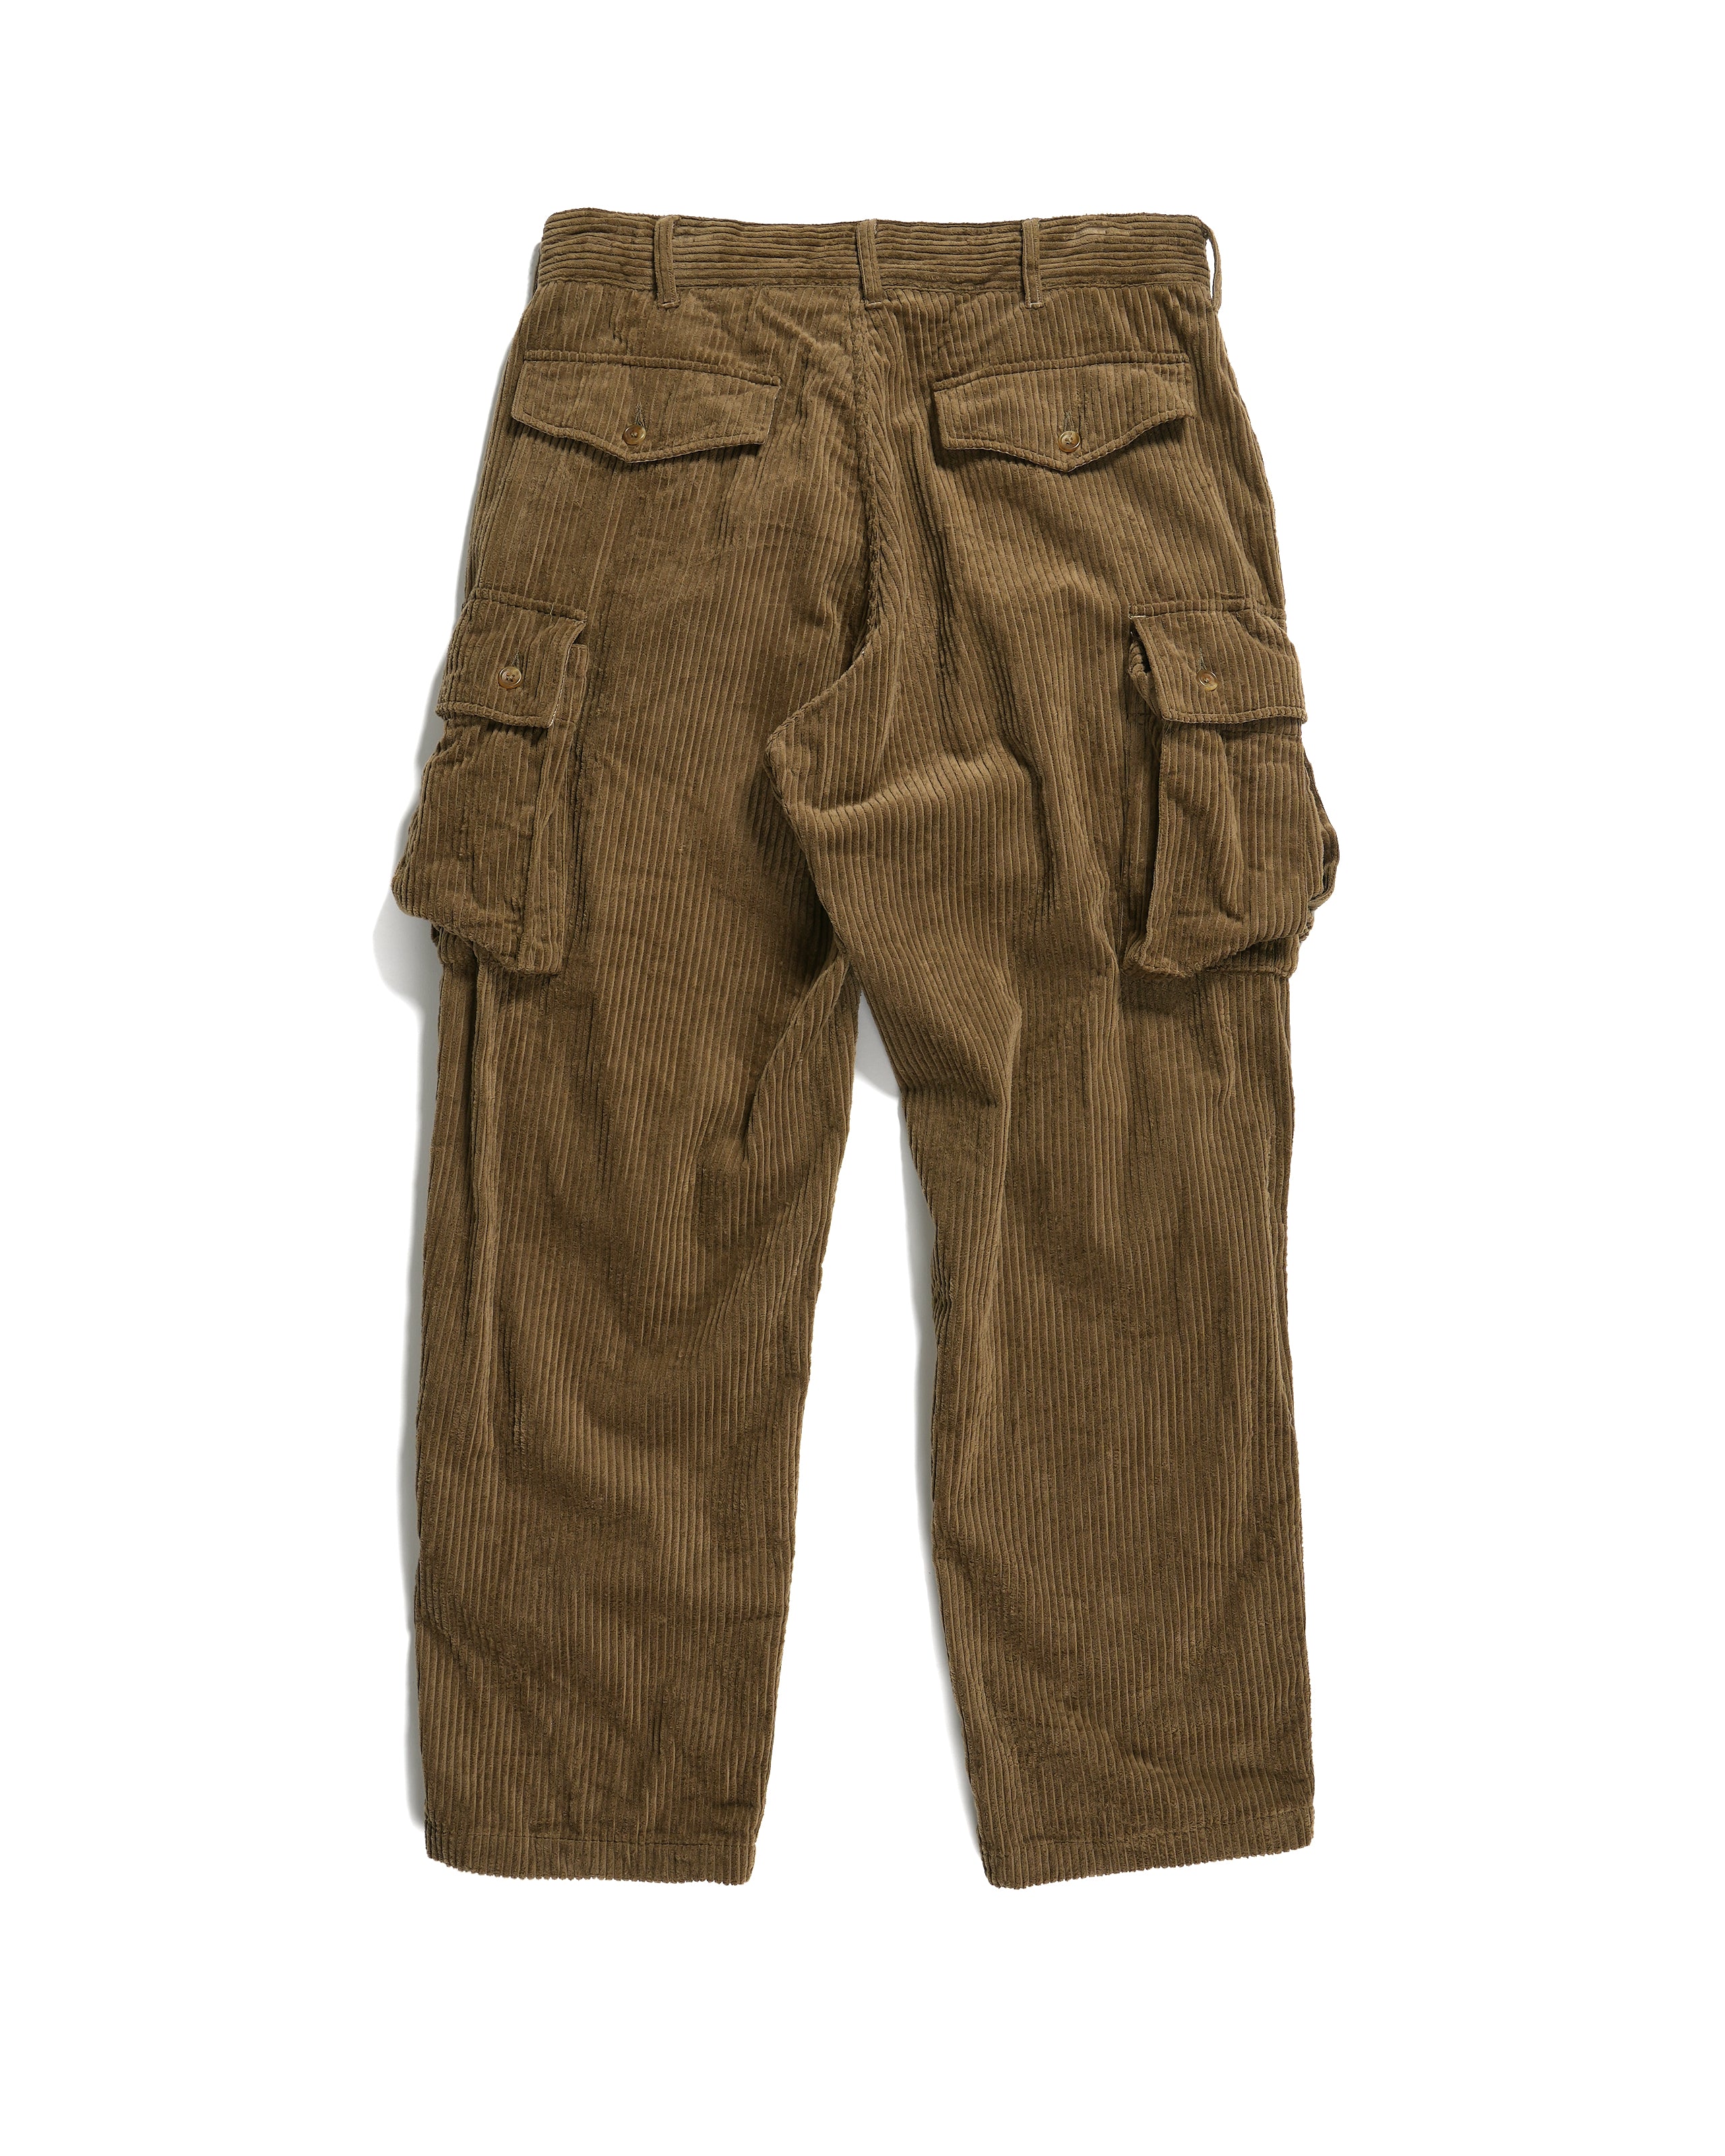 Engineered Garments FA Pant - Khaki Cotton 4.5W Corduroy